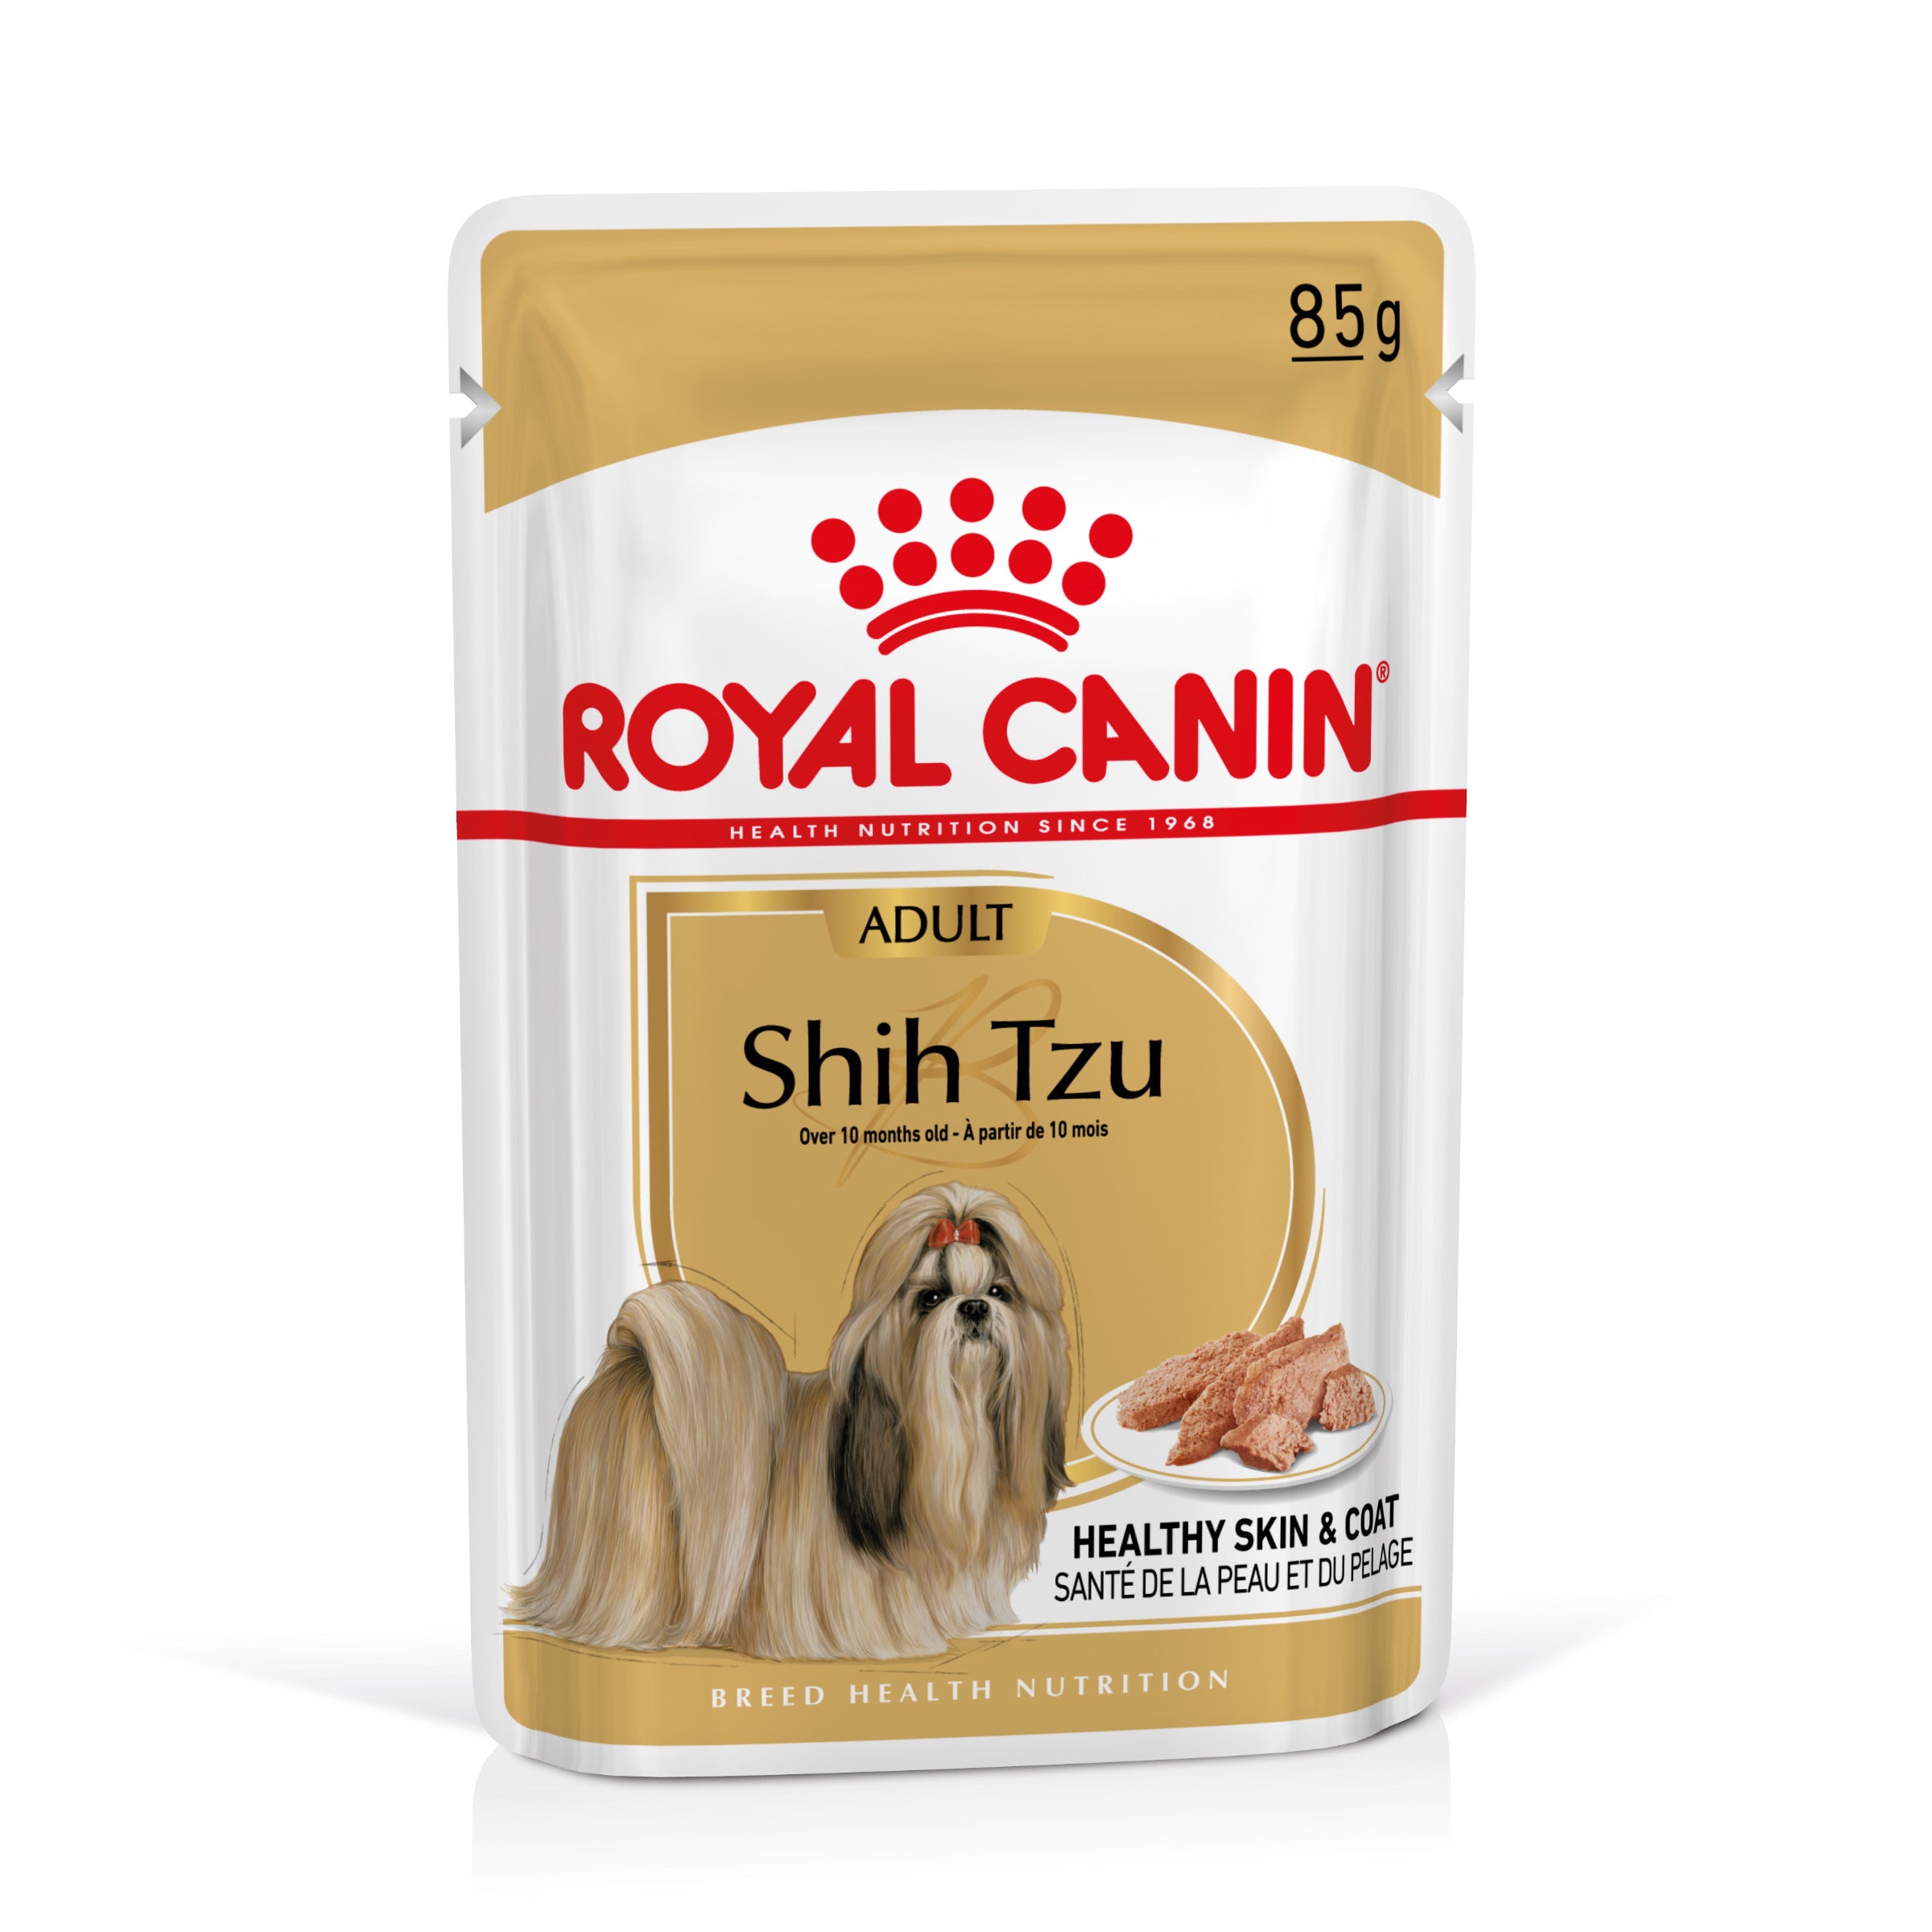 Billede af Royal canin - Royal Canin Shih Tzu Adult Vådfoder til hund 12x85g - Dog Food